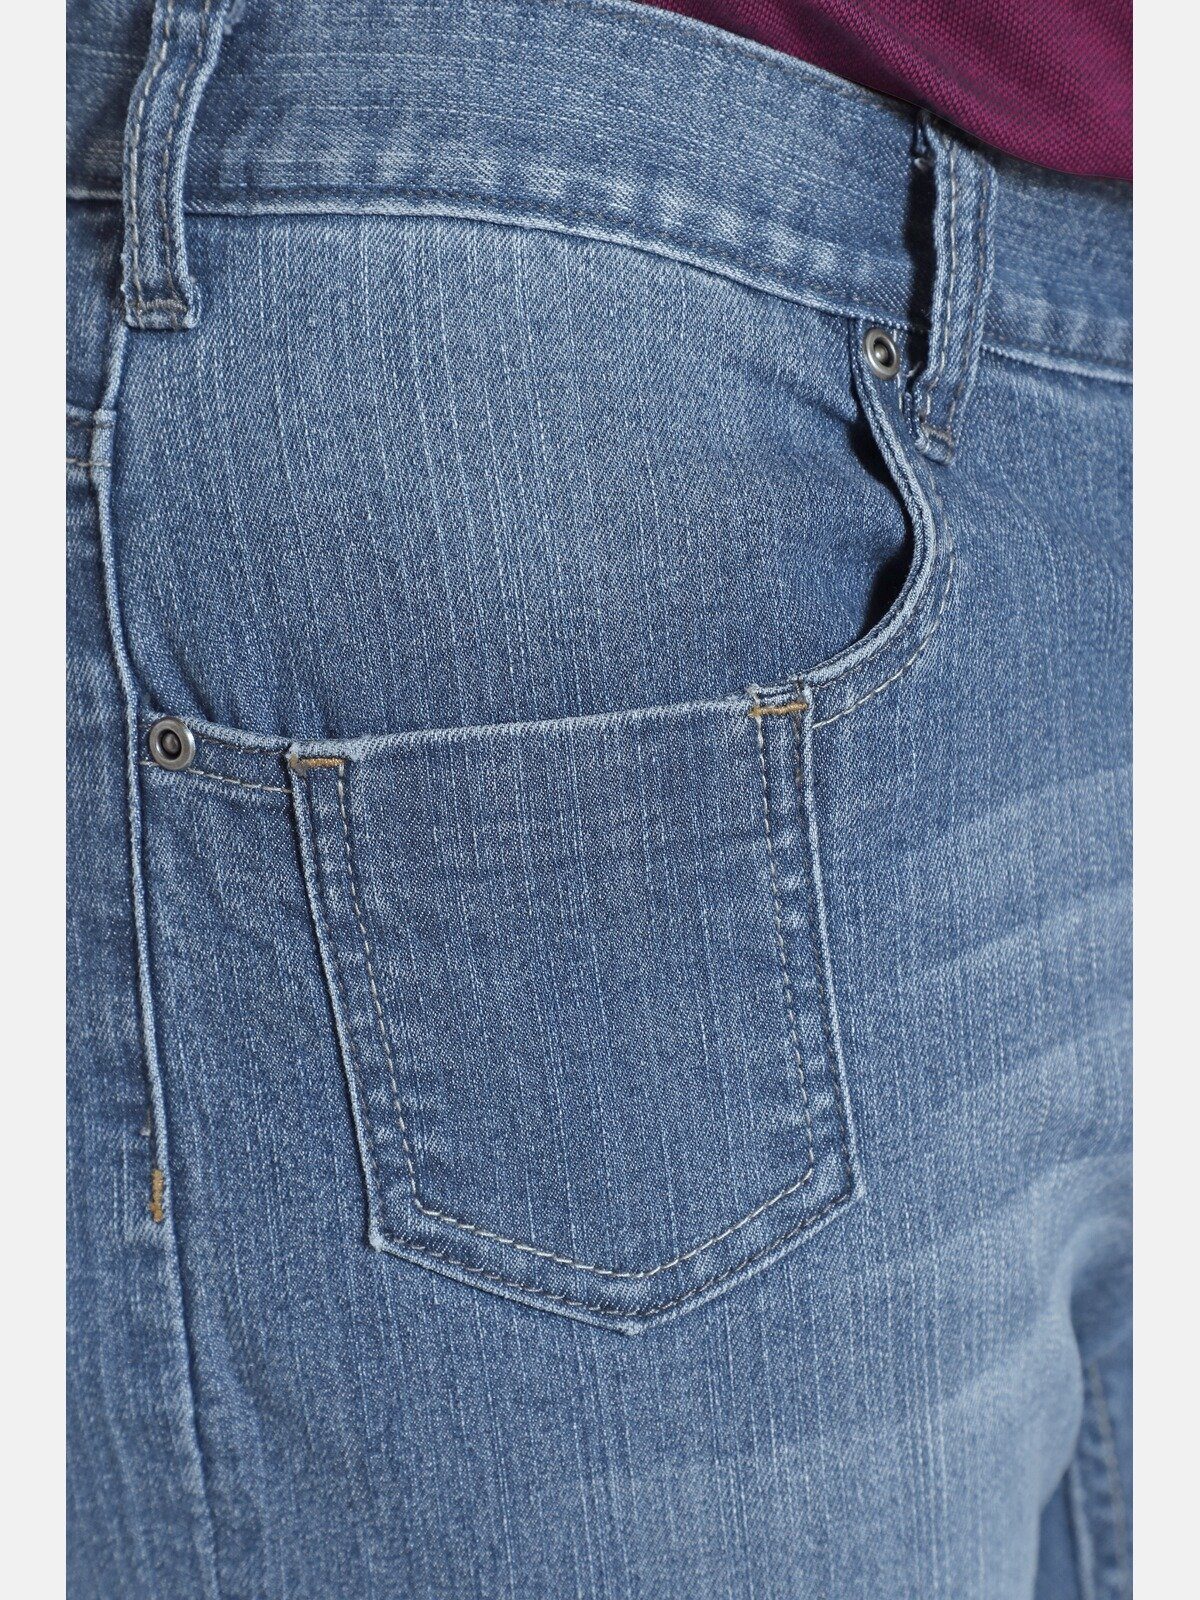 Colby BARON Five-Pocket-Design 5-Pocket-Jeans Charles CASSANDER, dunkelblau